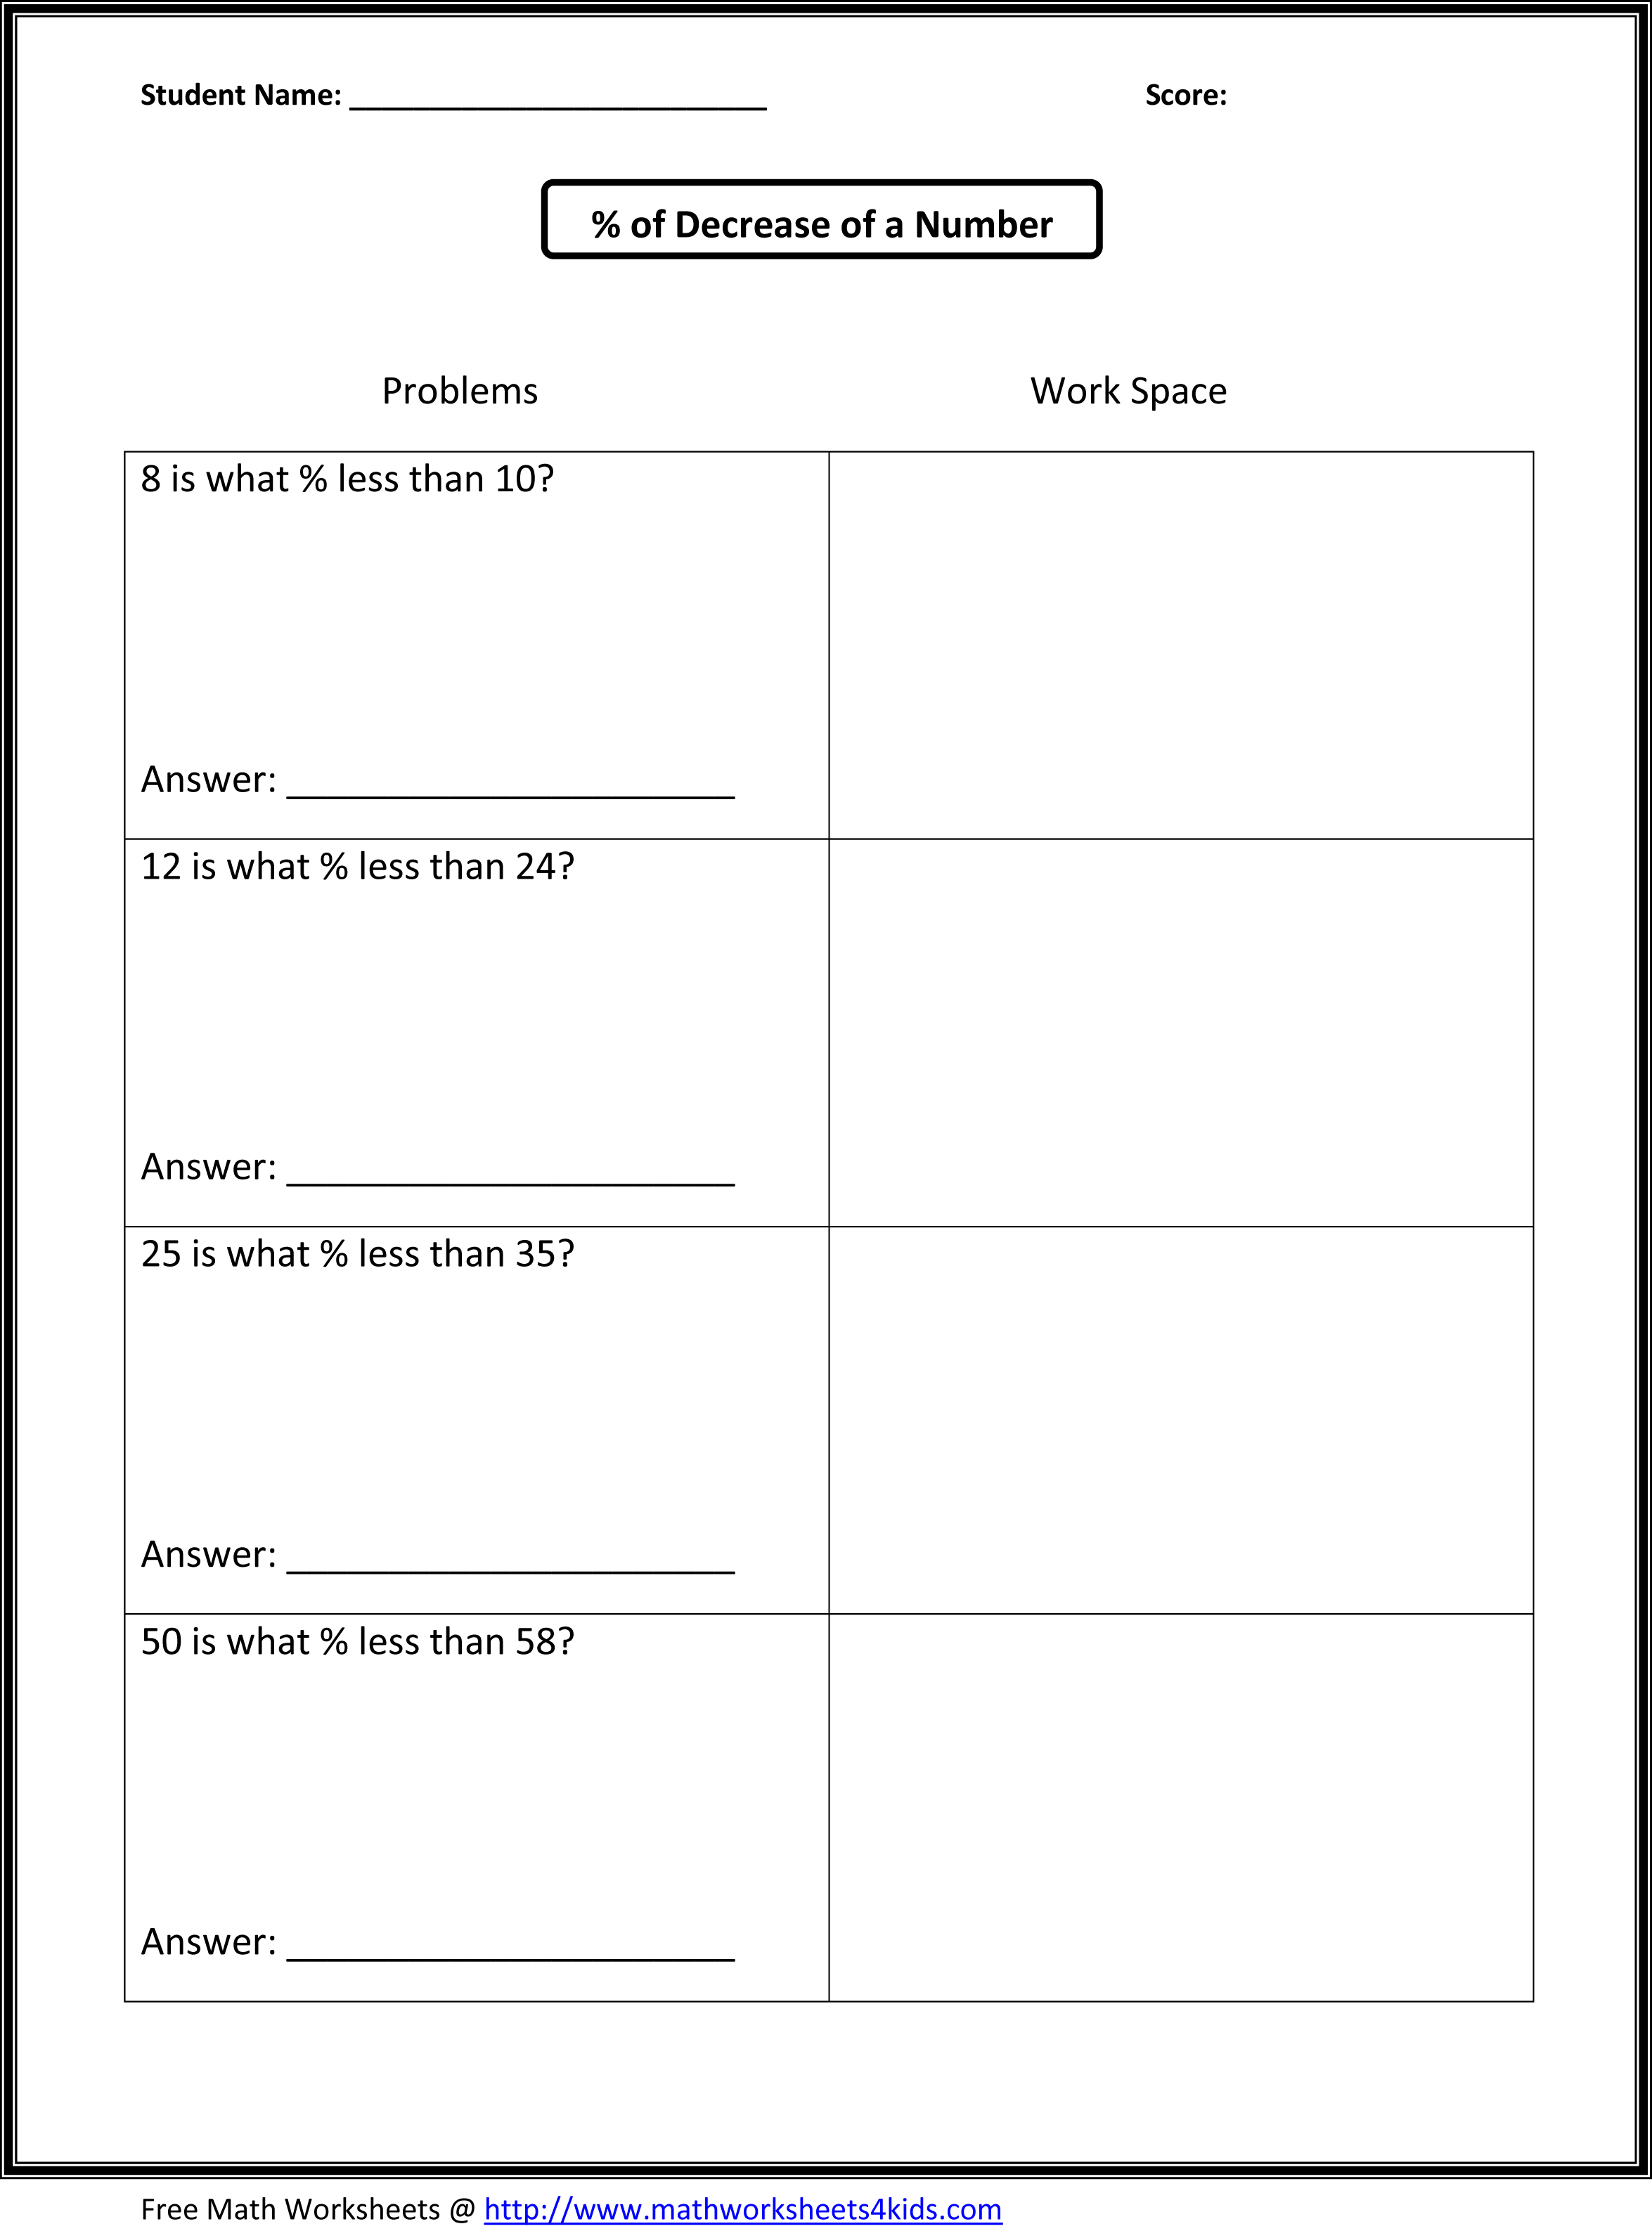 7th Grade Math Worksheets Image